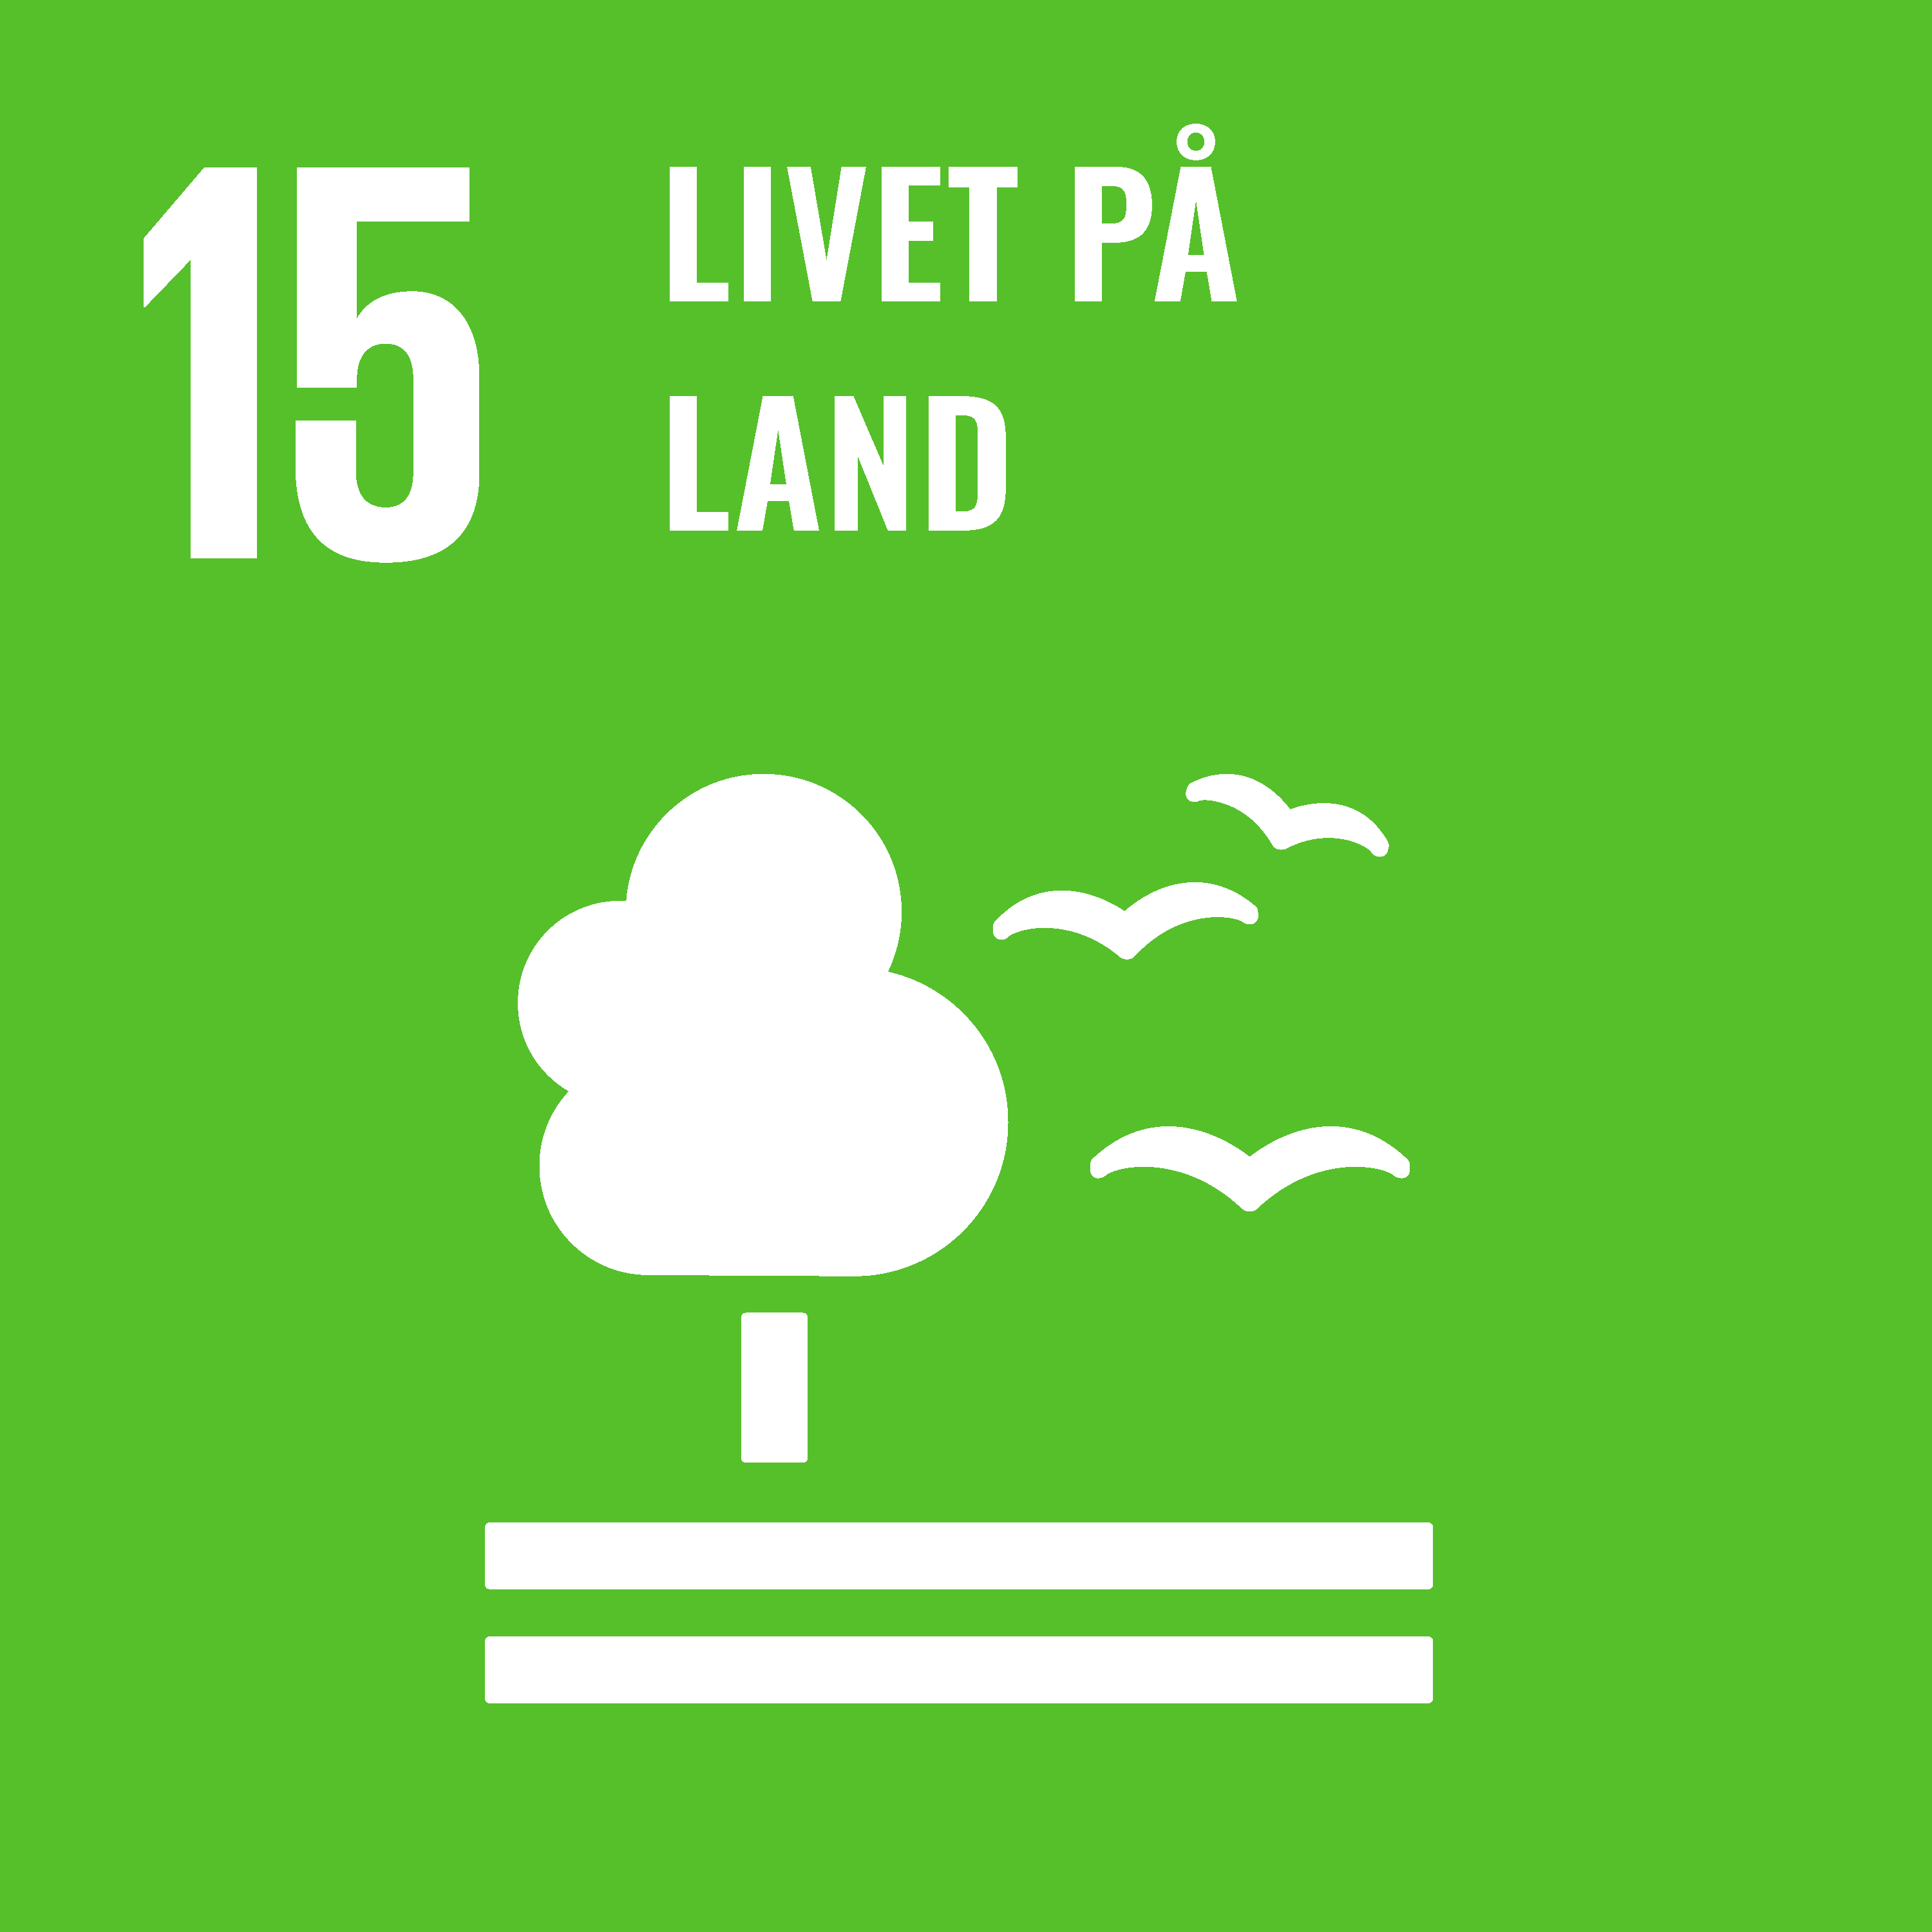 Livet på land (SDG-15)